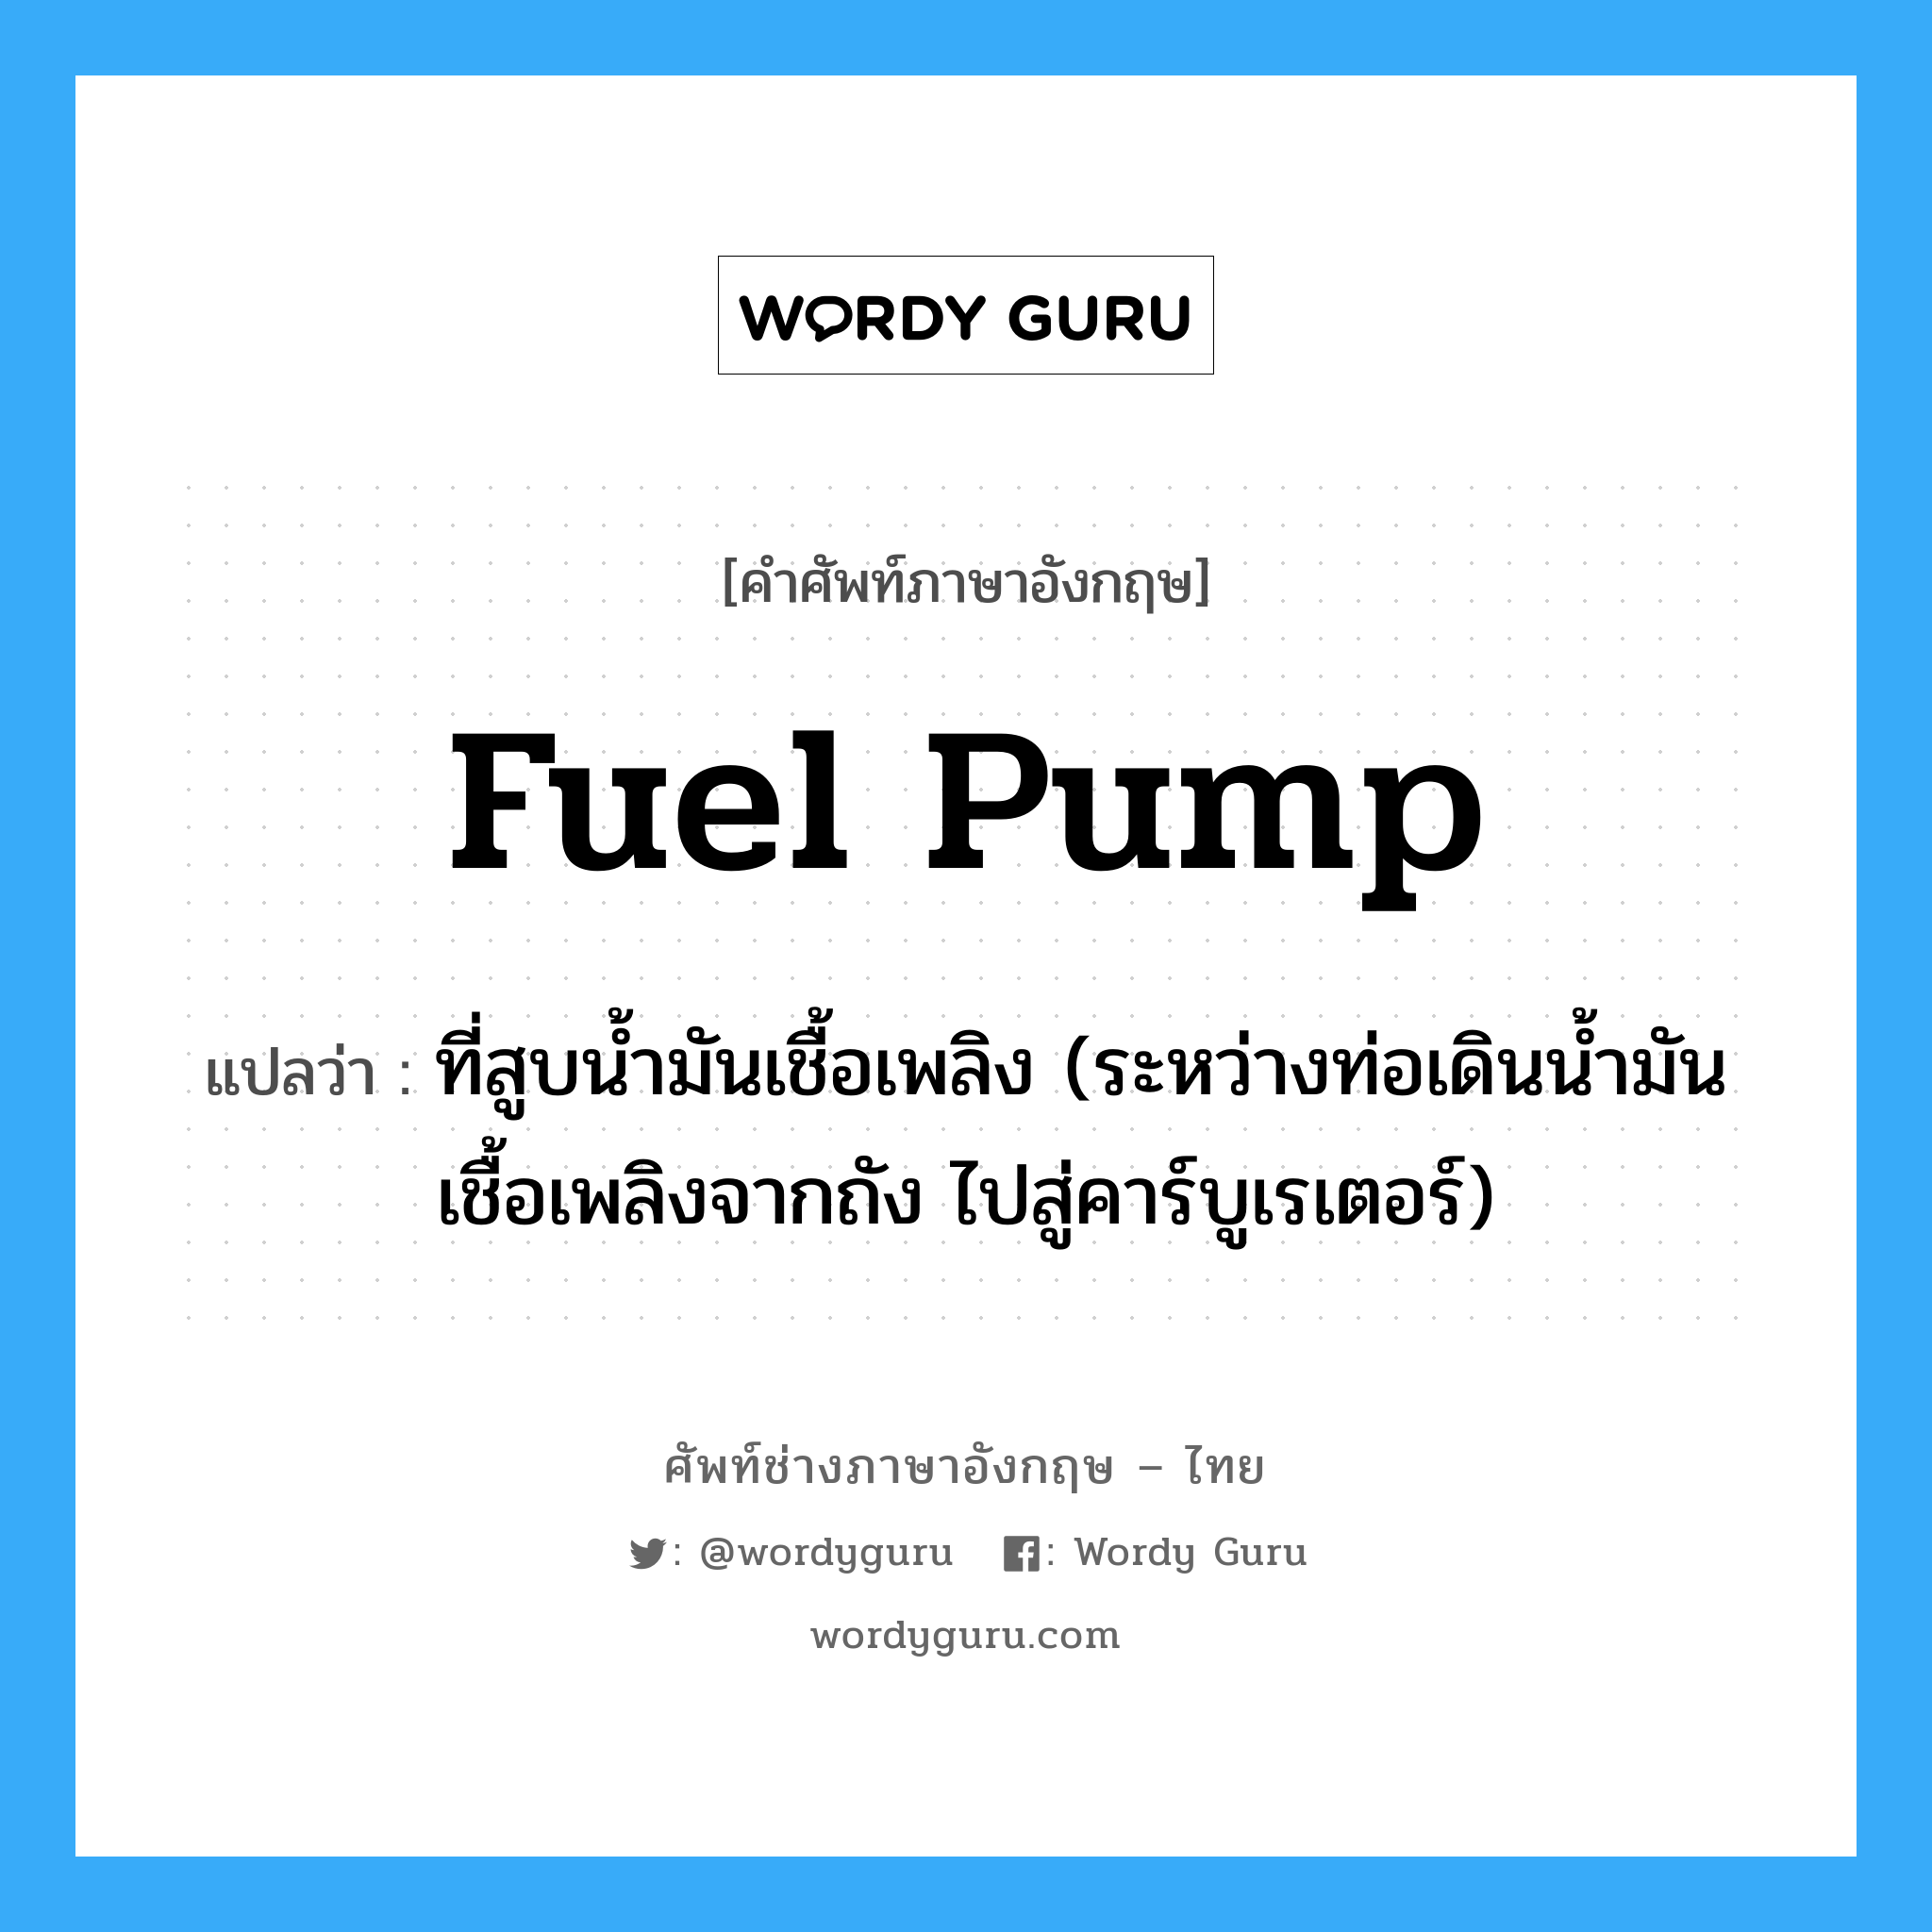 fuel pump แปลว่า?, คำศัพท์ช่างภาษาอังกฤษ - ไทย fuel pump คำศัพท์ภาษาอังกฤษ fuel pump แปลว่า ที่สูบน้ำมันเชื้อเพลิง (ระหว่างท่อเดินน้ำมันเชื้อเพลิงจากถัง ไปสู่คาร์บูเรเตอร์)